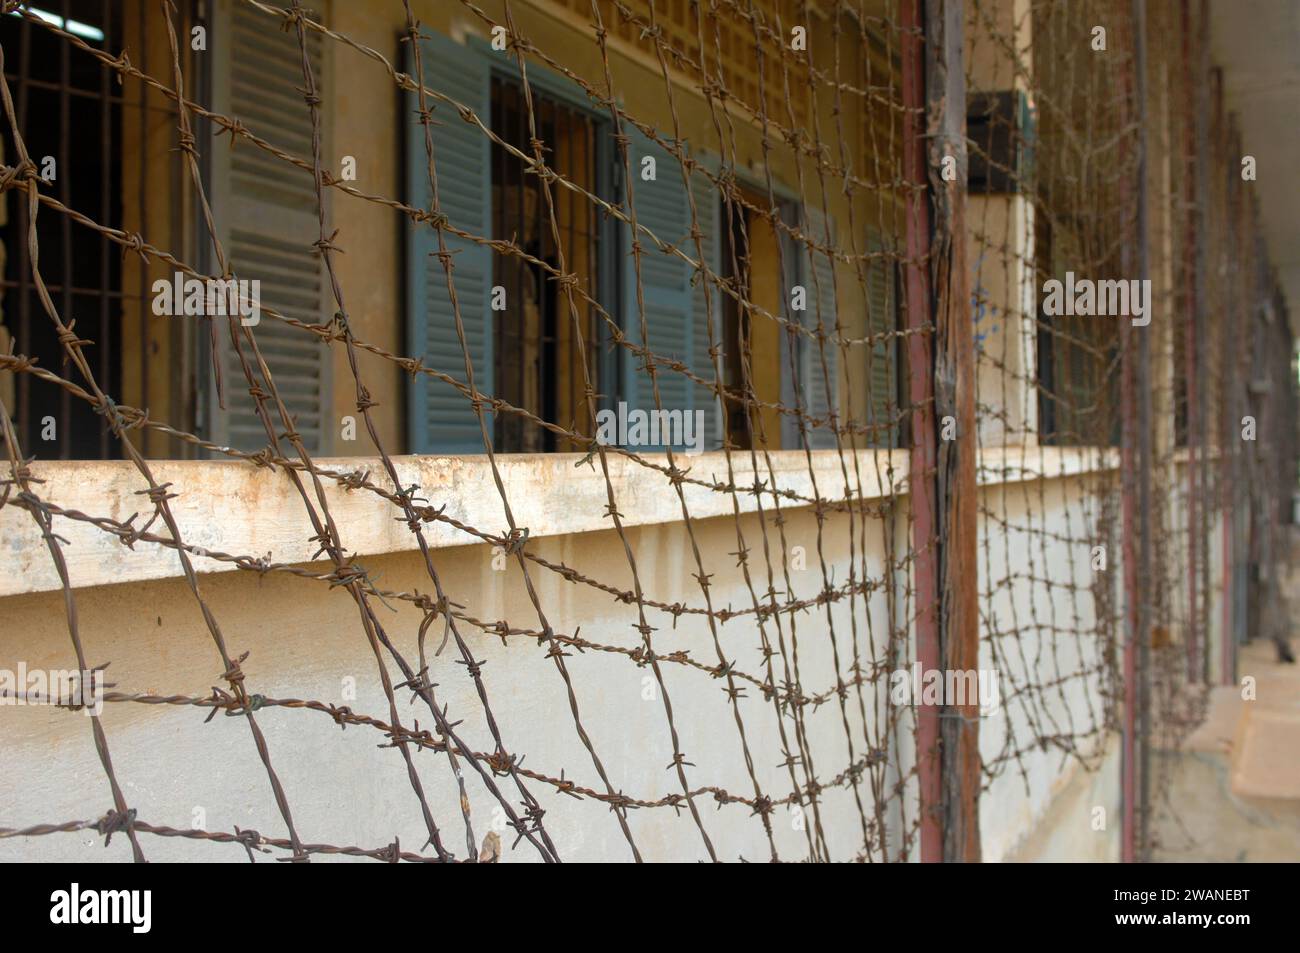 Balcon à l'extérieur des cellules de prison. Musée du génocide de Tuol Sleng (prison de sécurité S-21) logé dans un ancien lycée, Phnom Penh, Cambodge, Asie. Banque D'Images